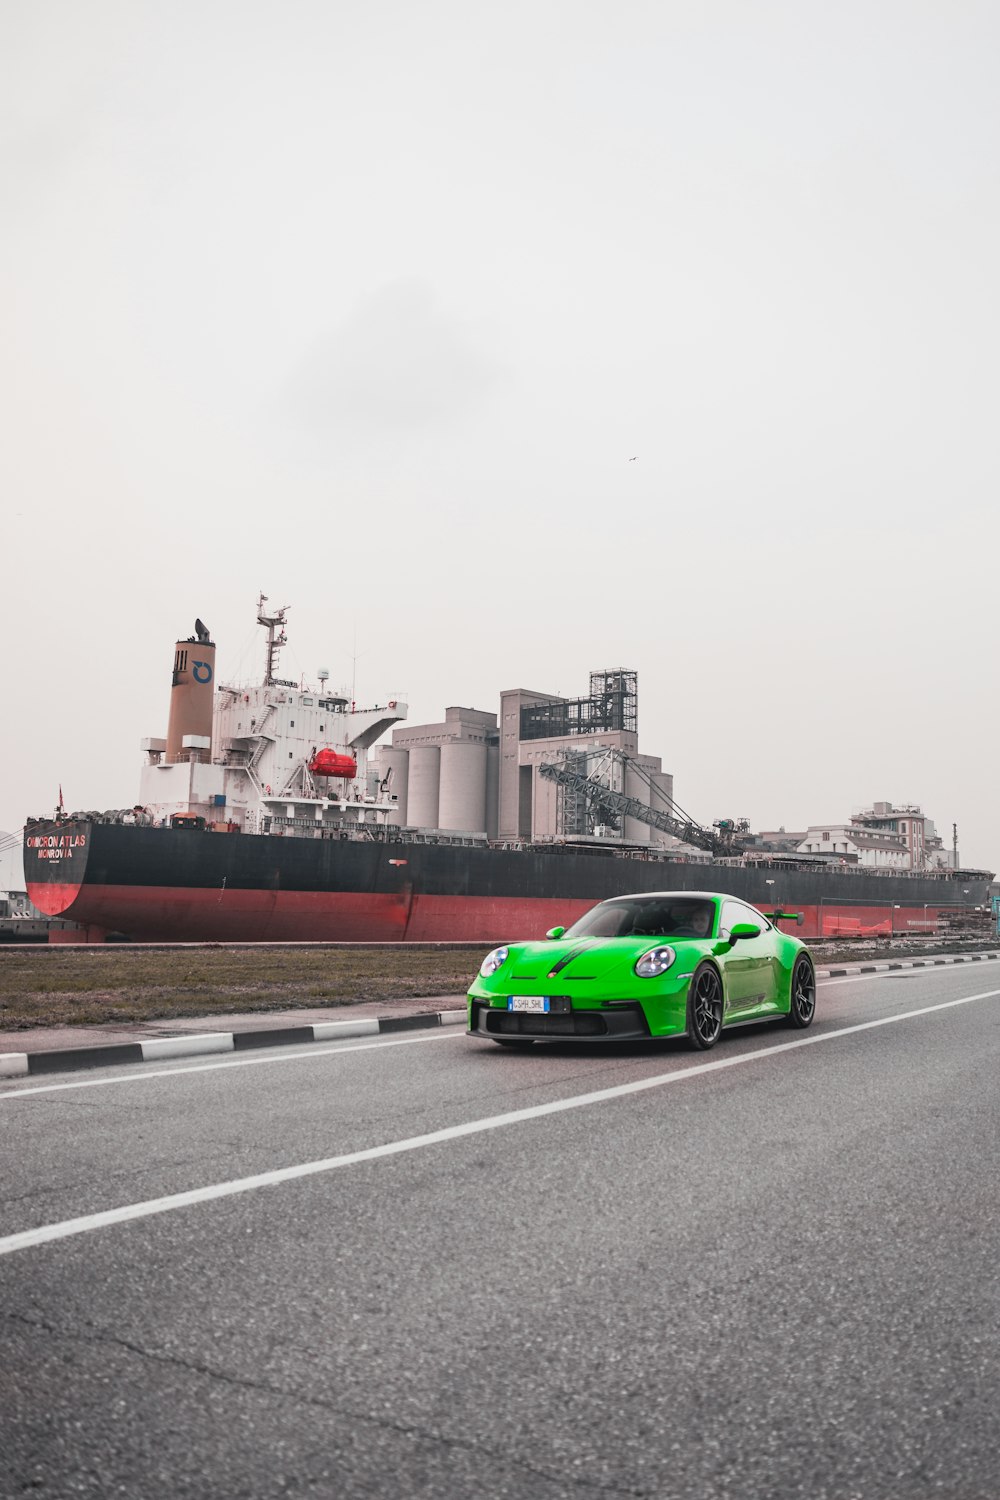 Une voiture de sport verte roulant sur une route à côté d’un grand navire